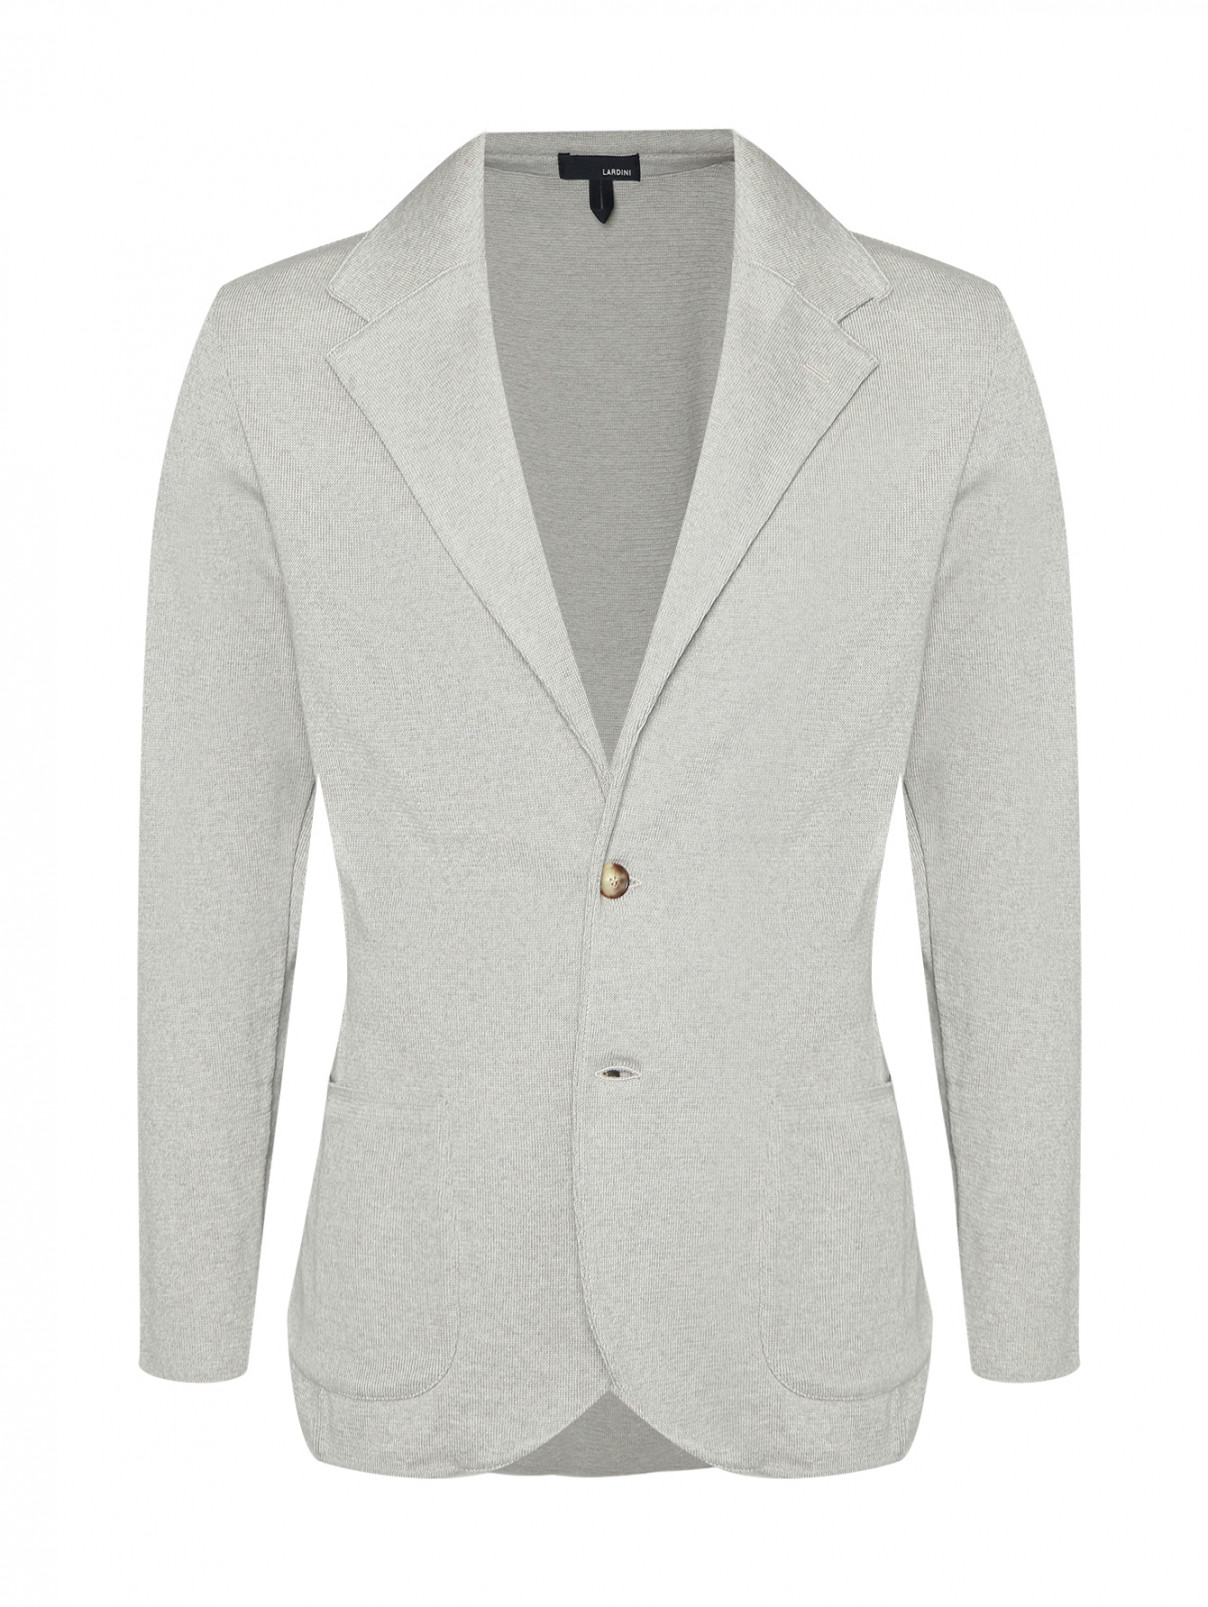 Трикотажный пиджак из хлопка с карманами LARDINI  –  Общий вид  – Цвет:  Бежевый